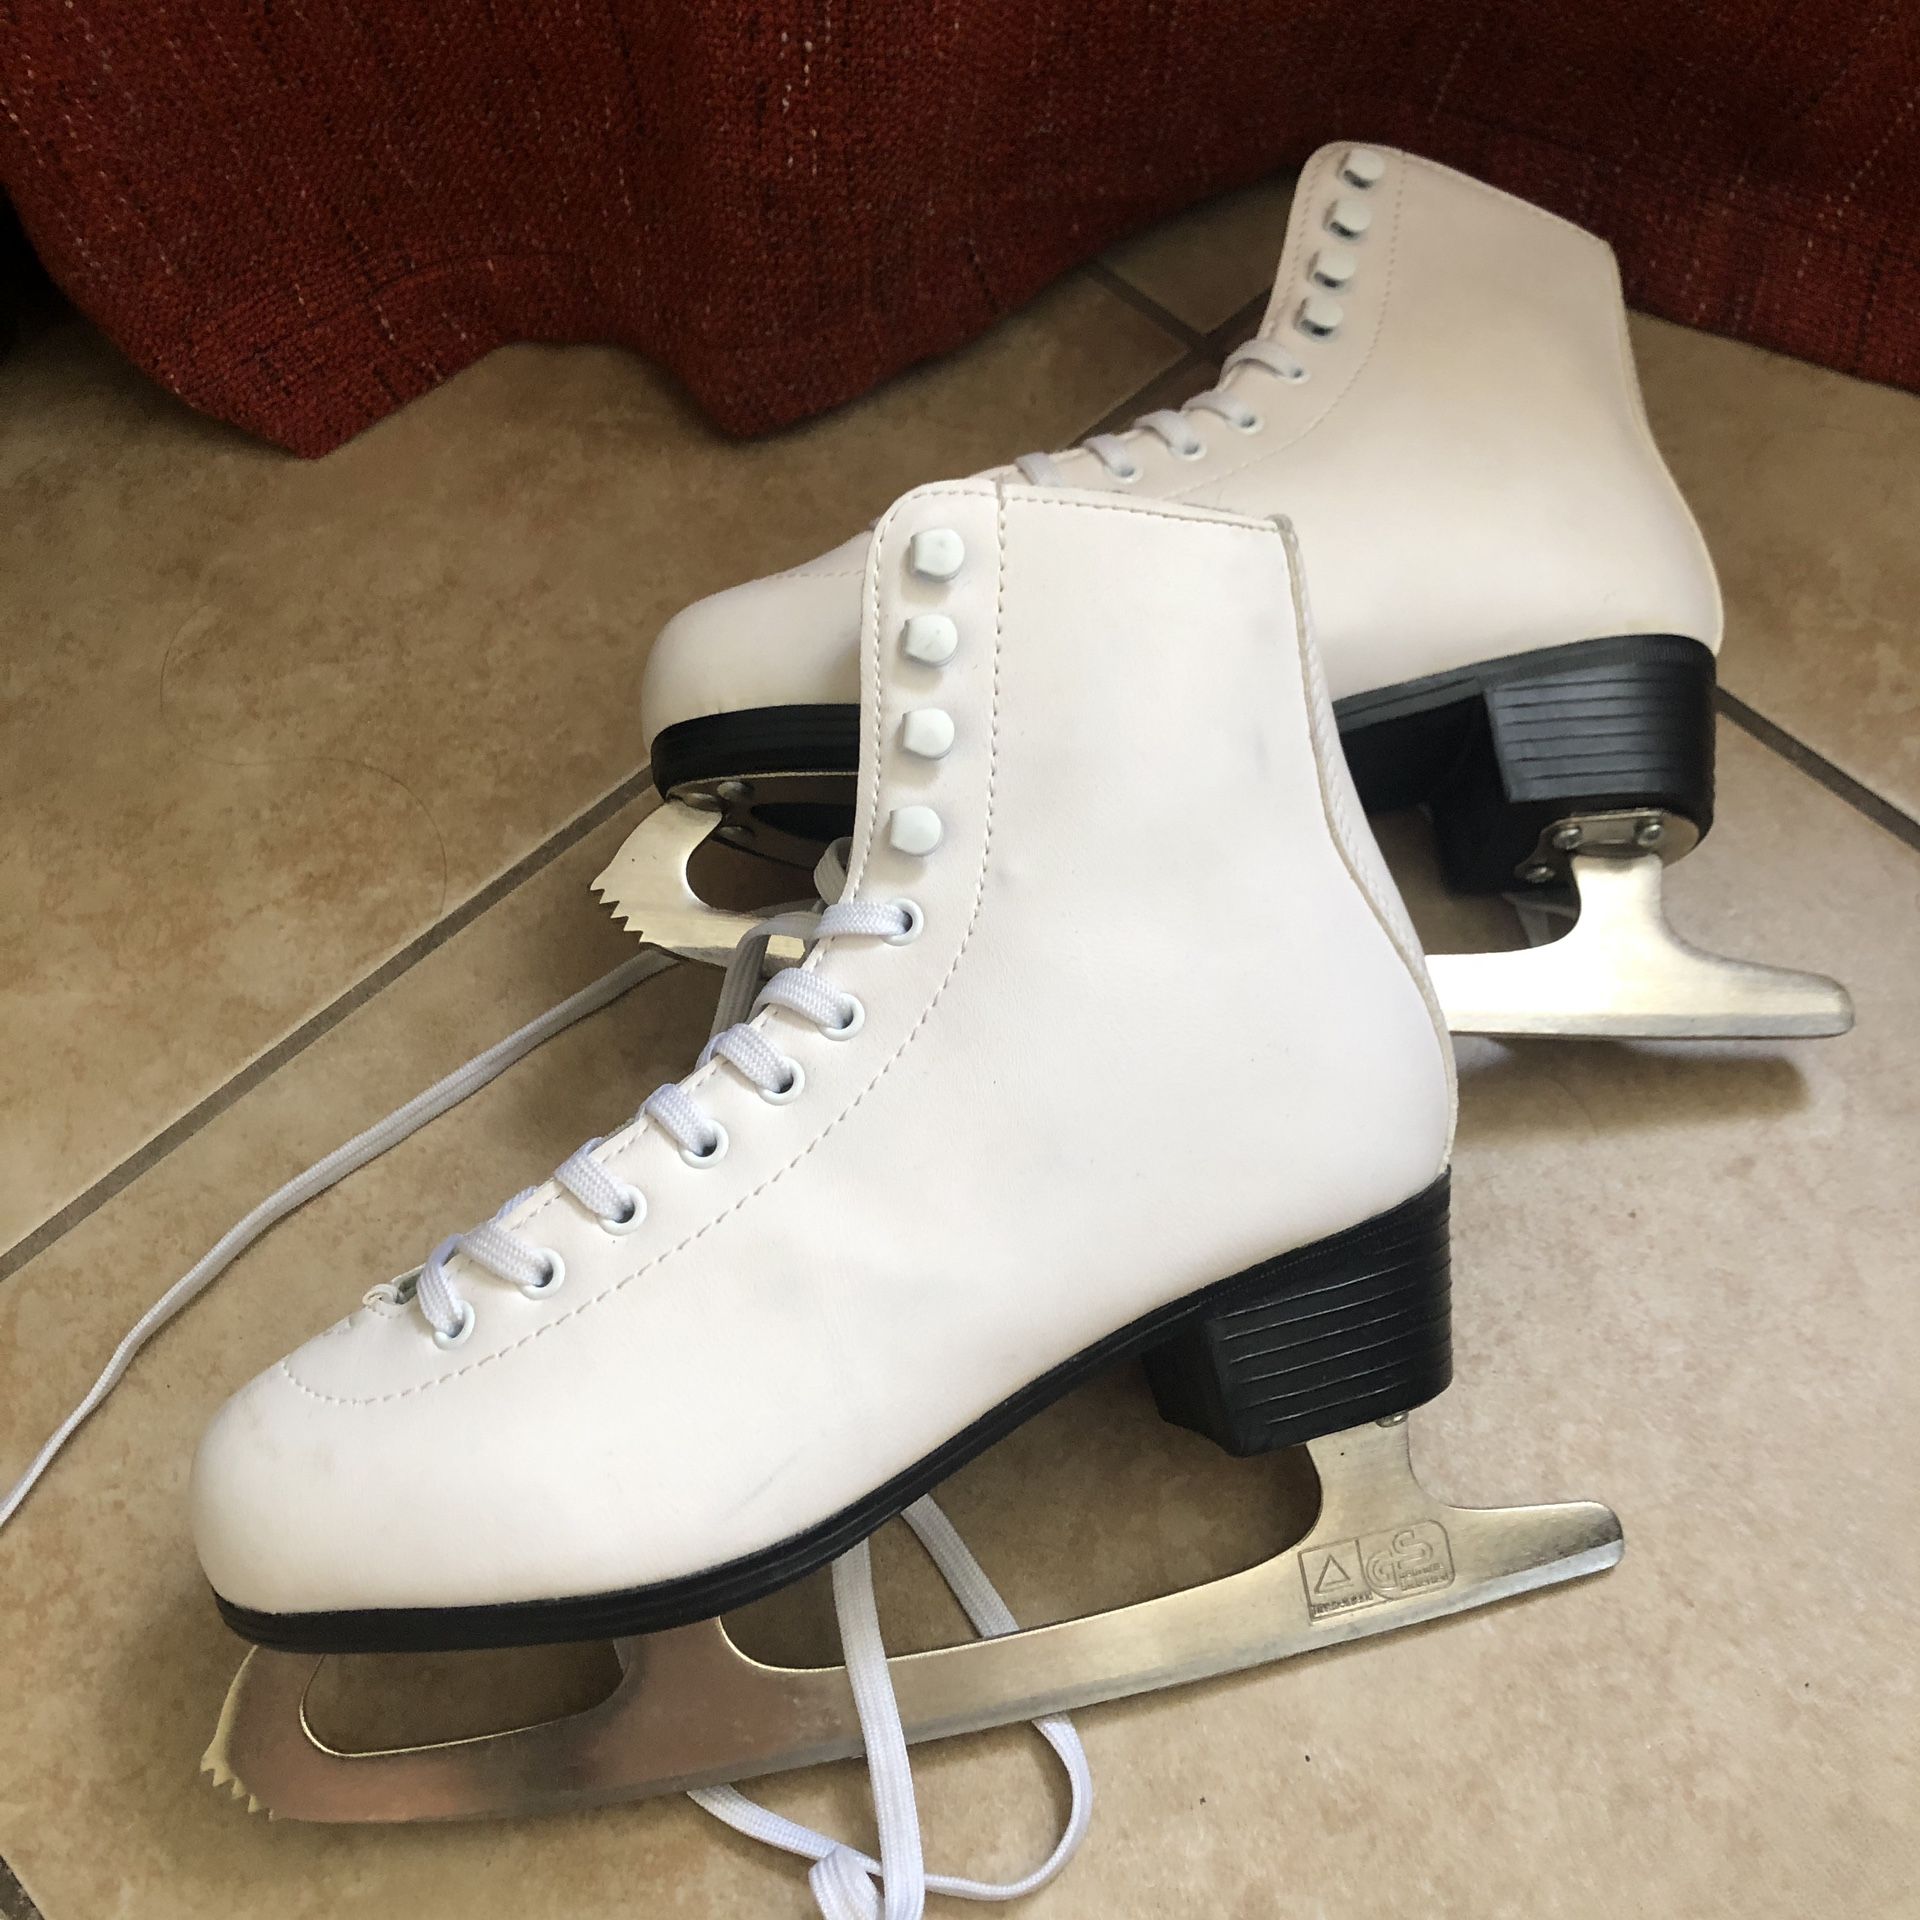 Ice skates - WOMENS SIZE 6 - used